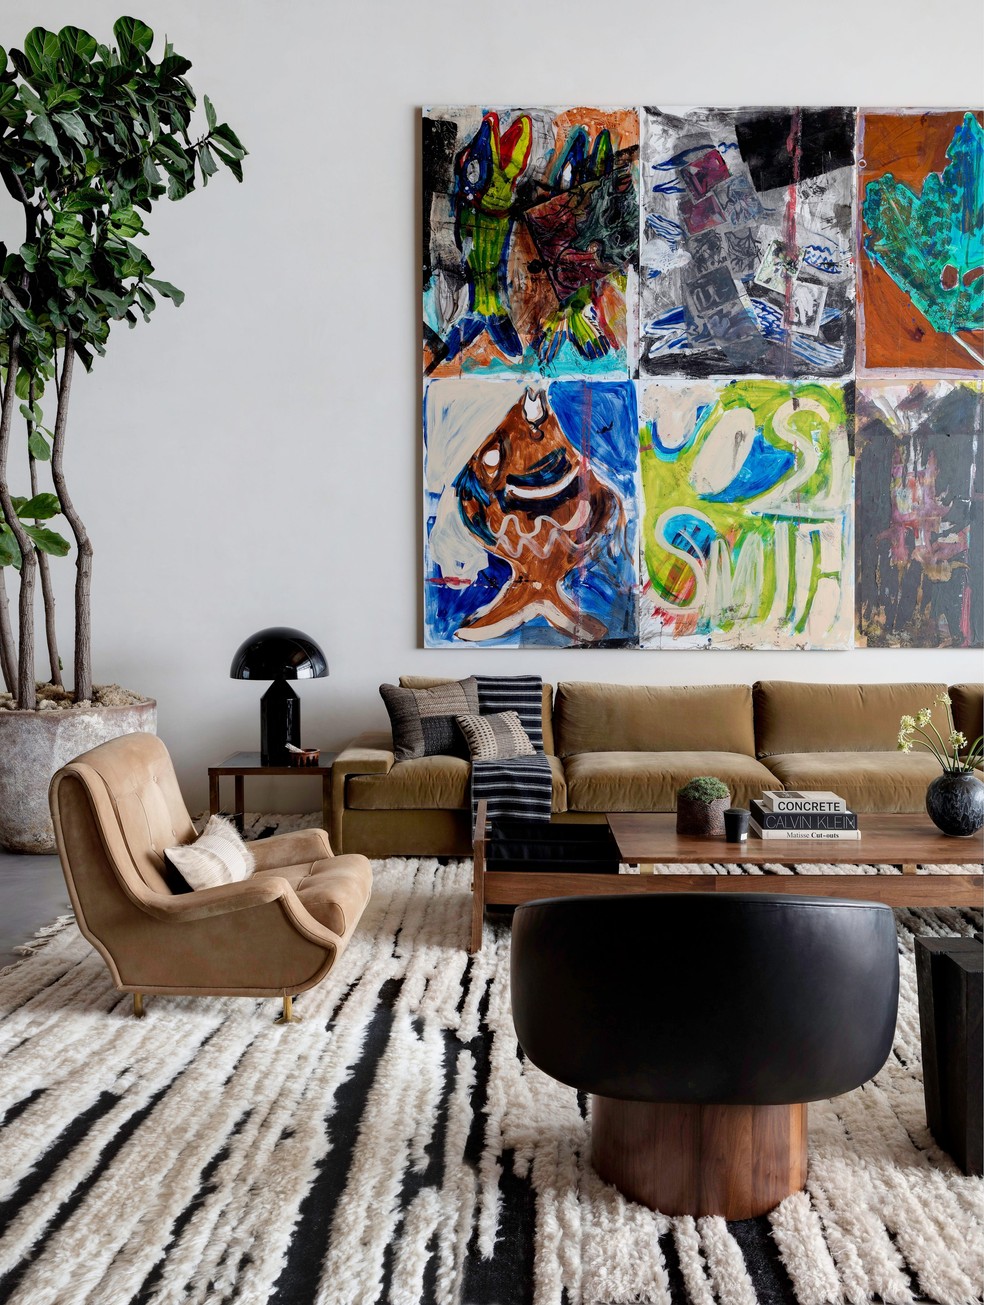 Décor do dia: sala de estar decorada com pufes e gallery wall - Casa Vogue